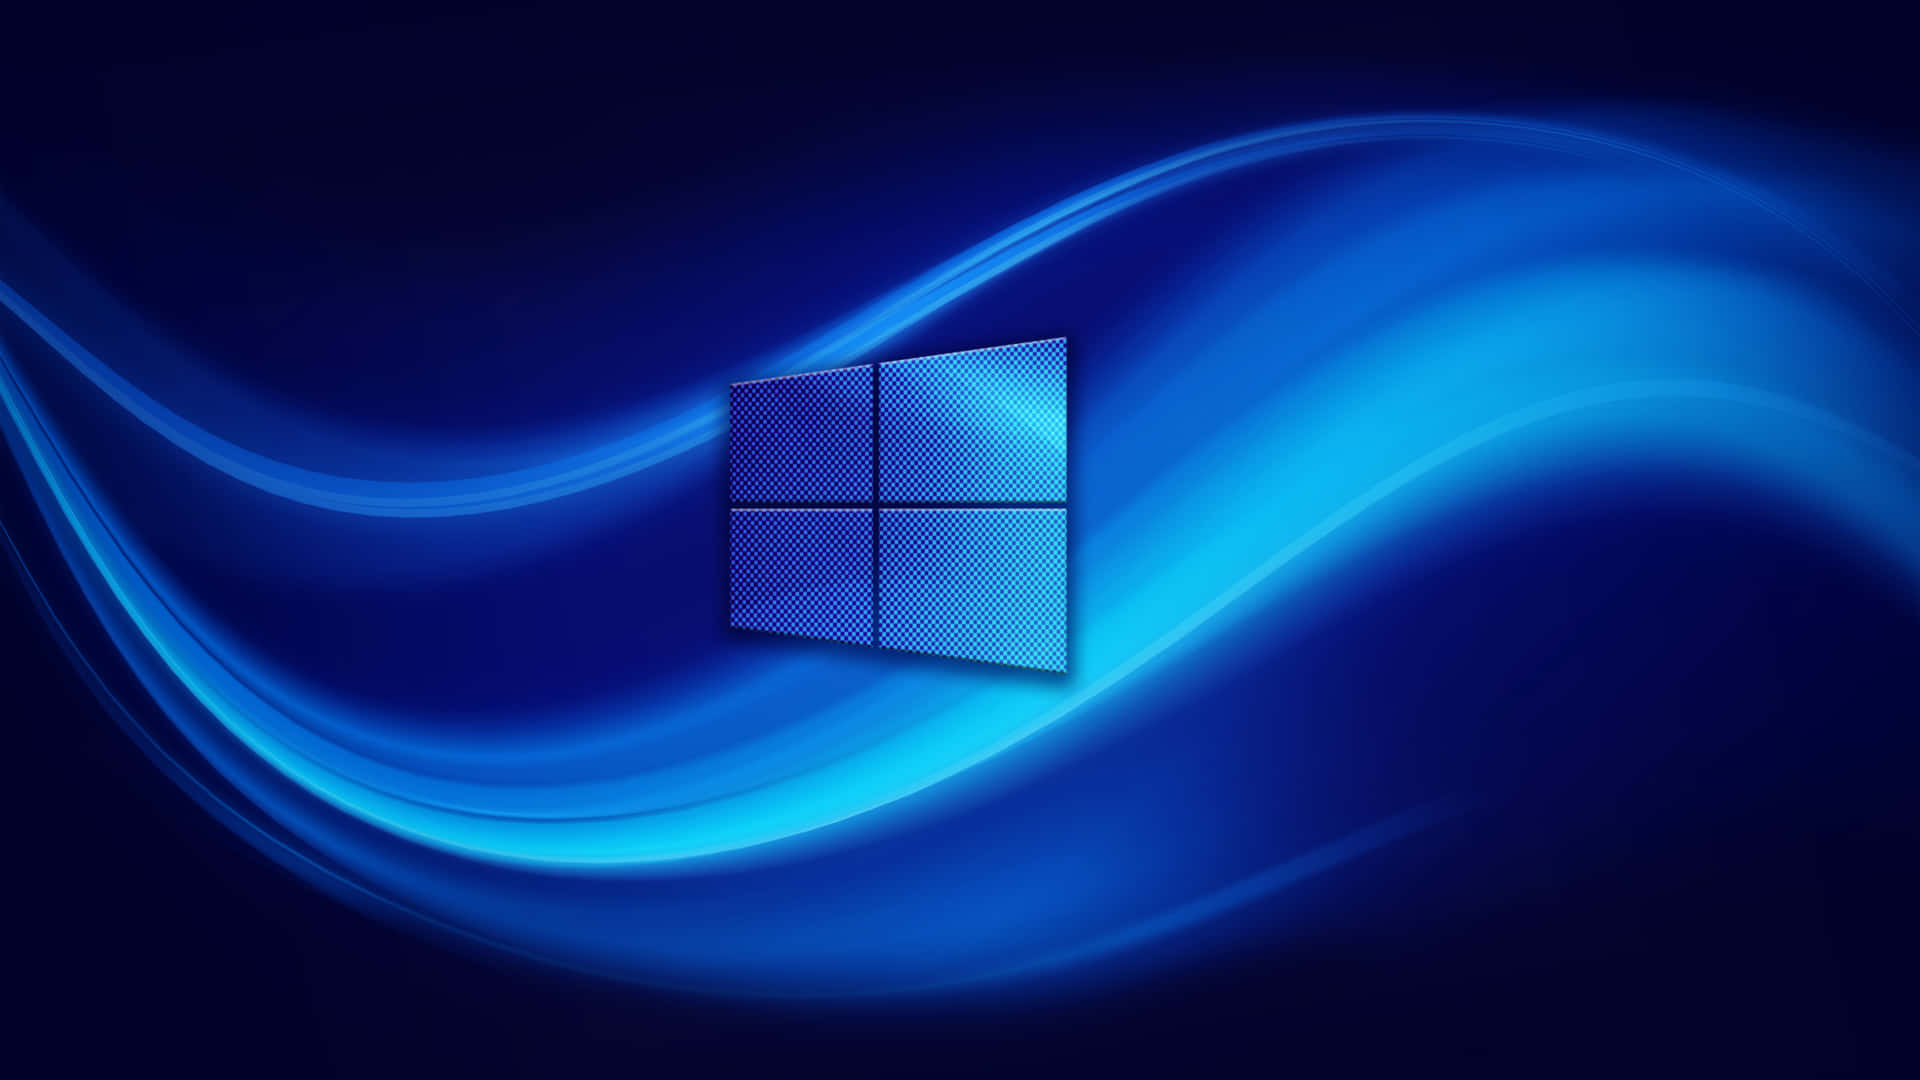 Erkundensie Windows 10 Mit Einer Visuellen Erzählung